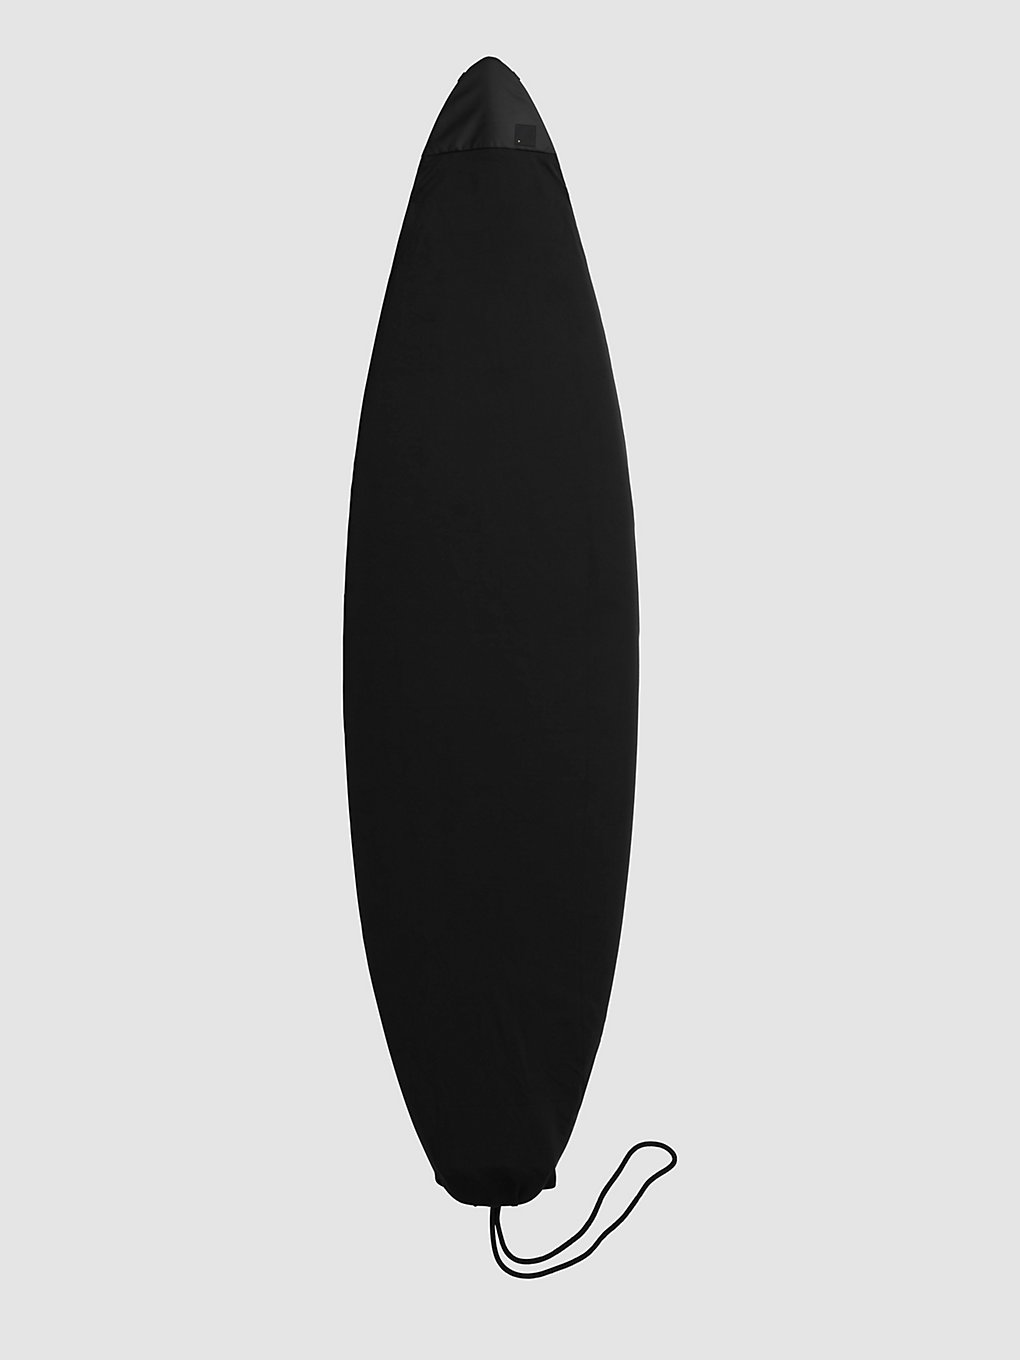 Db Surf Sock 6'0" Stab Ltd Surfboard tas zwart